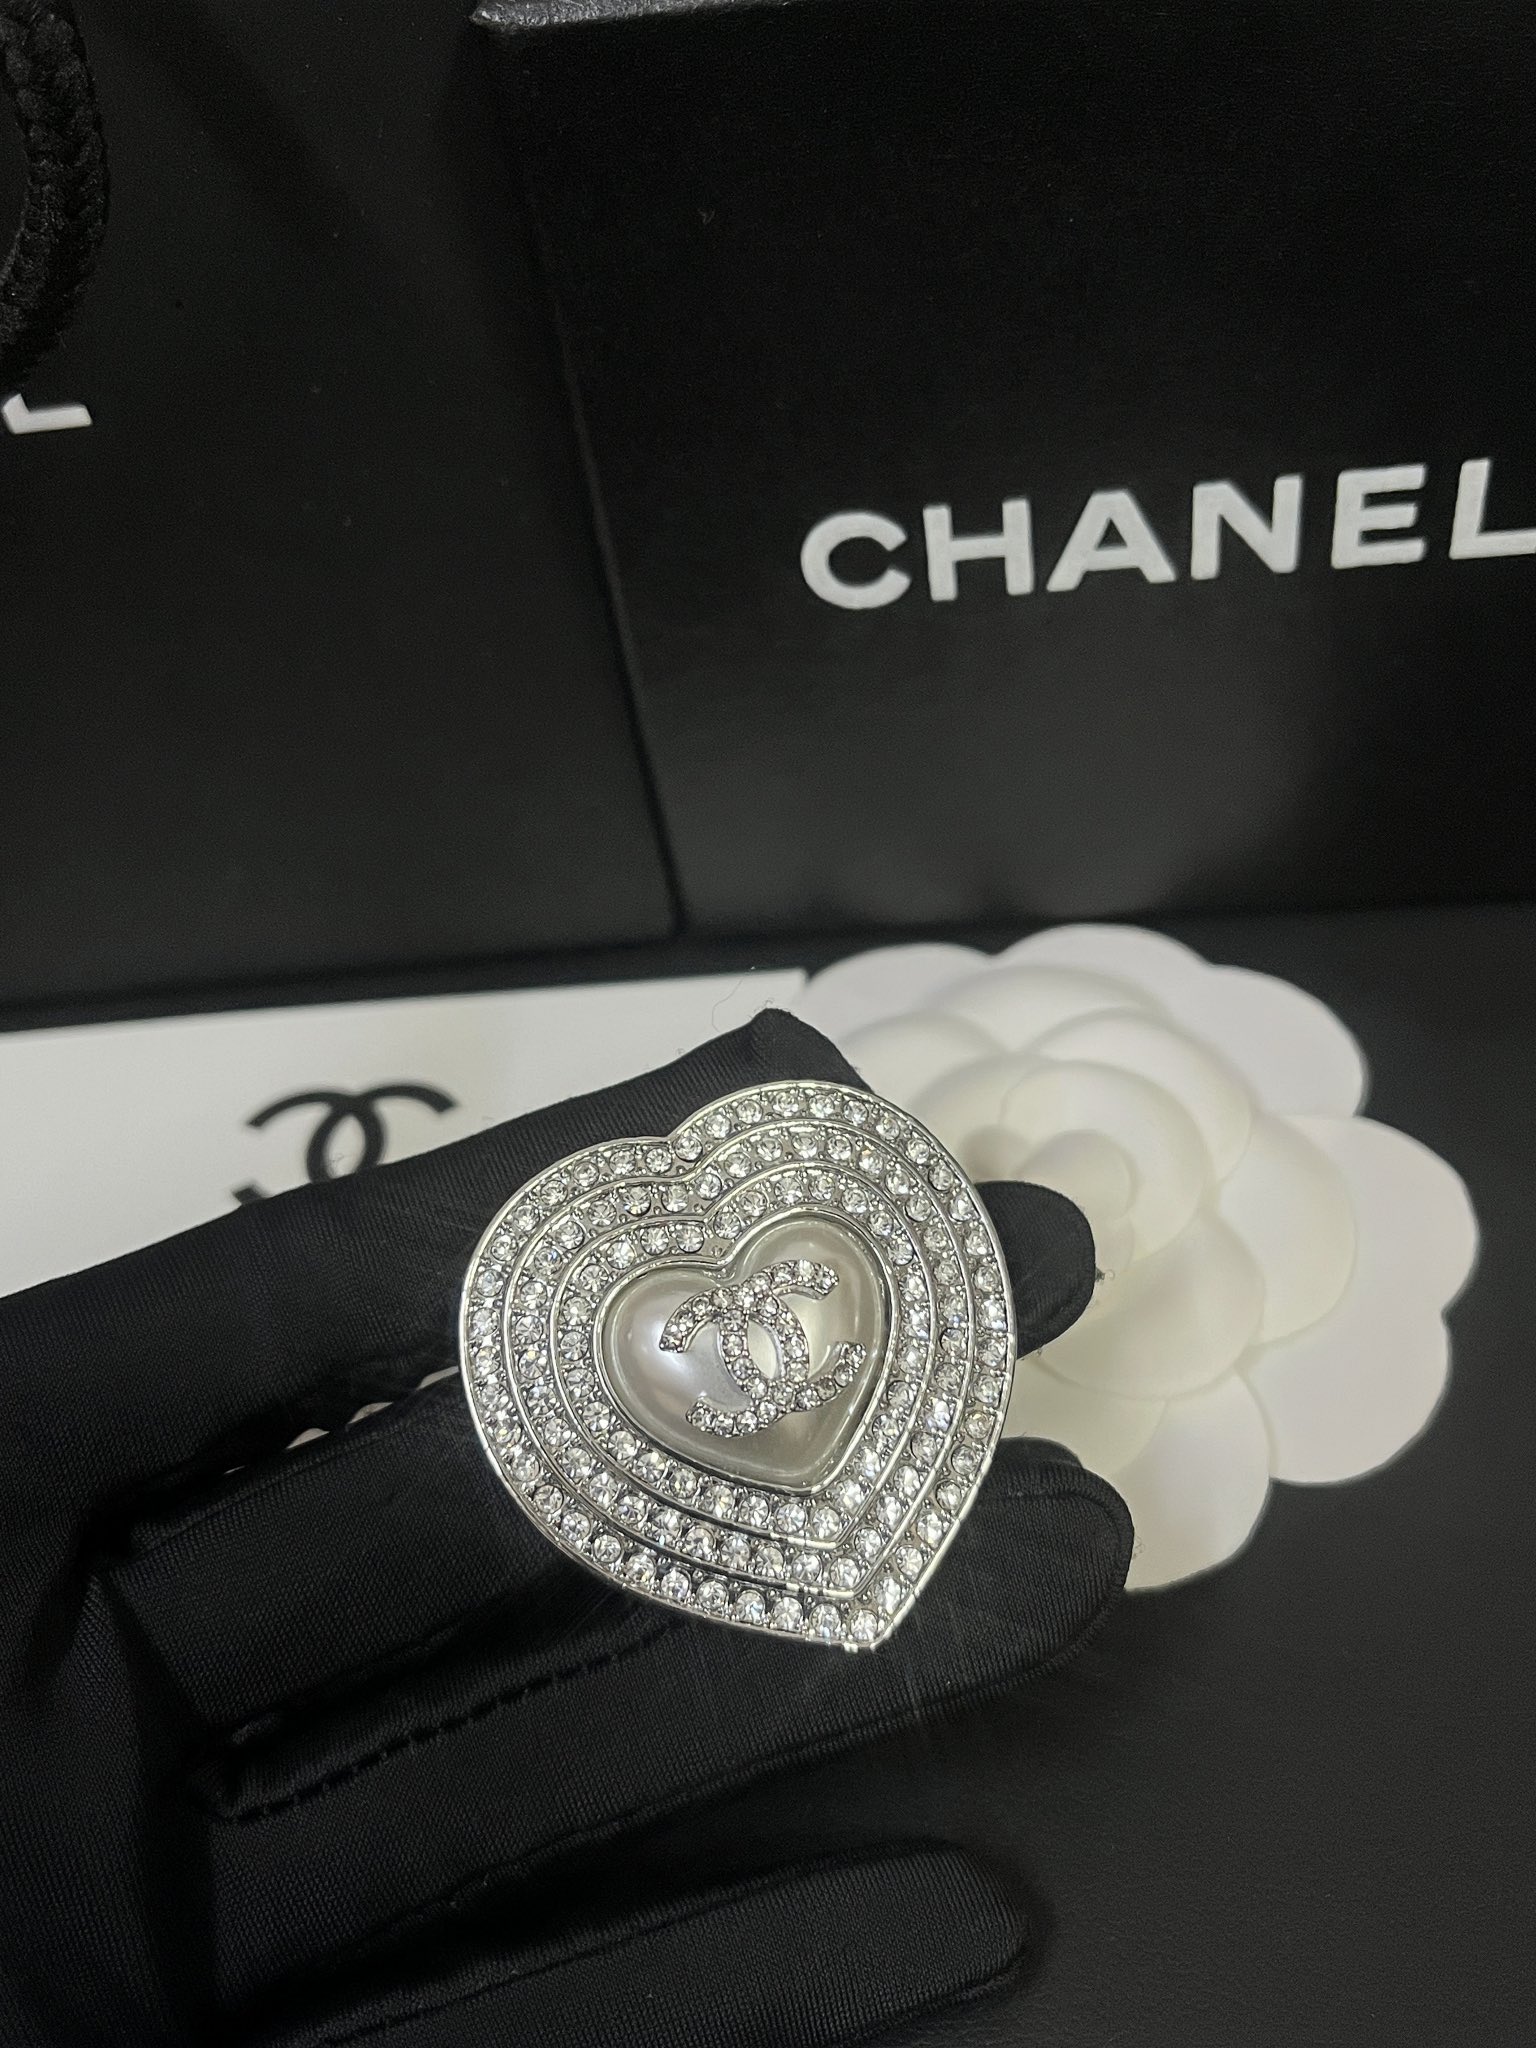 D159 Chanel brooch